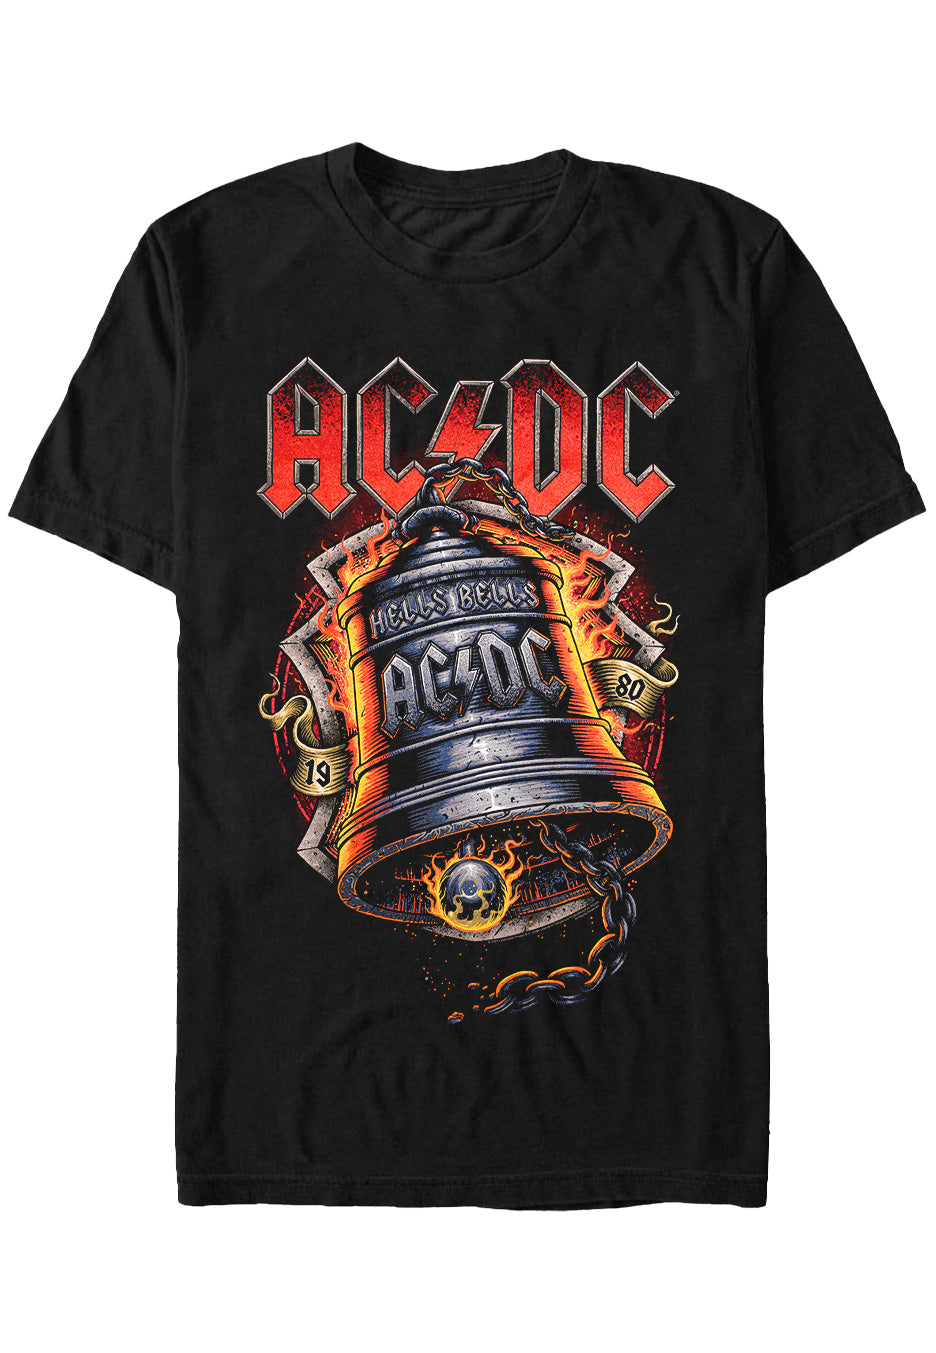 AC/DC - Hells Bells Flames - T-Shirt